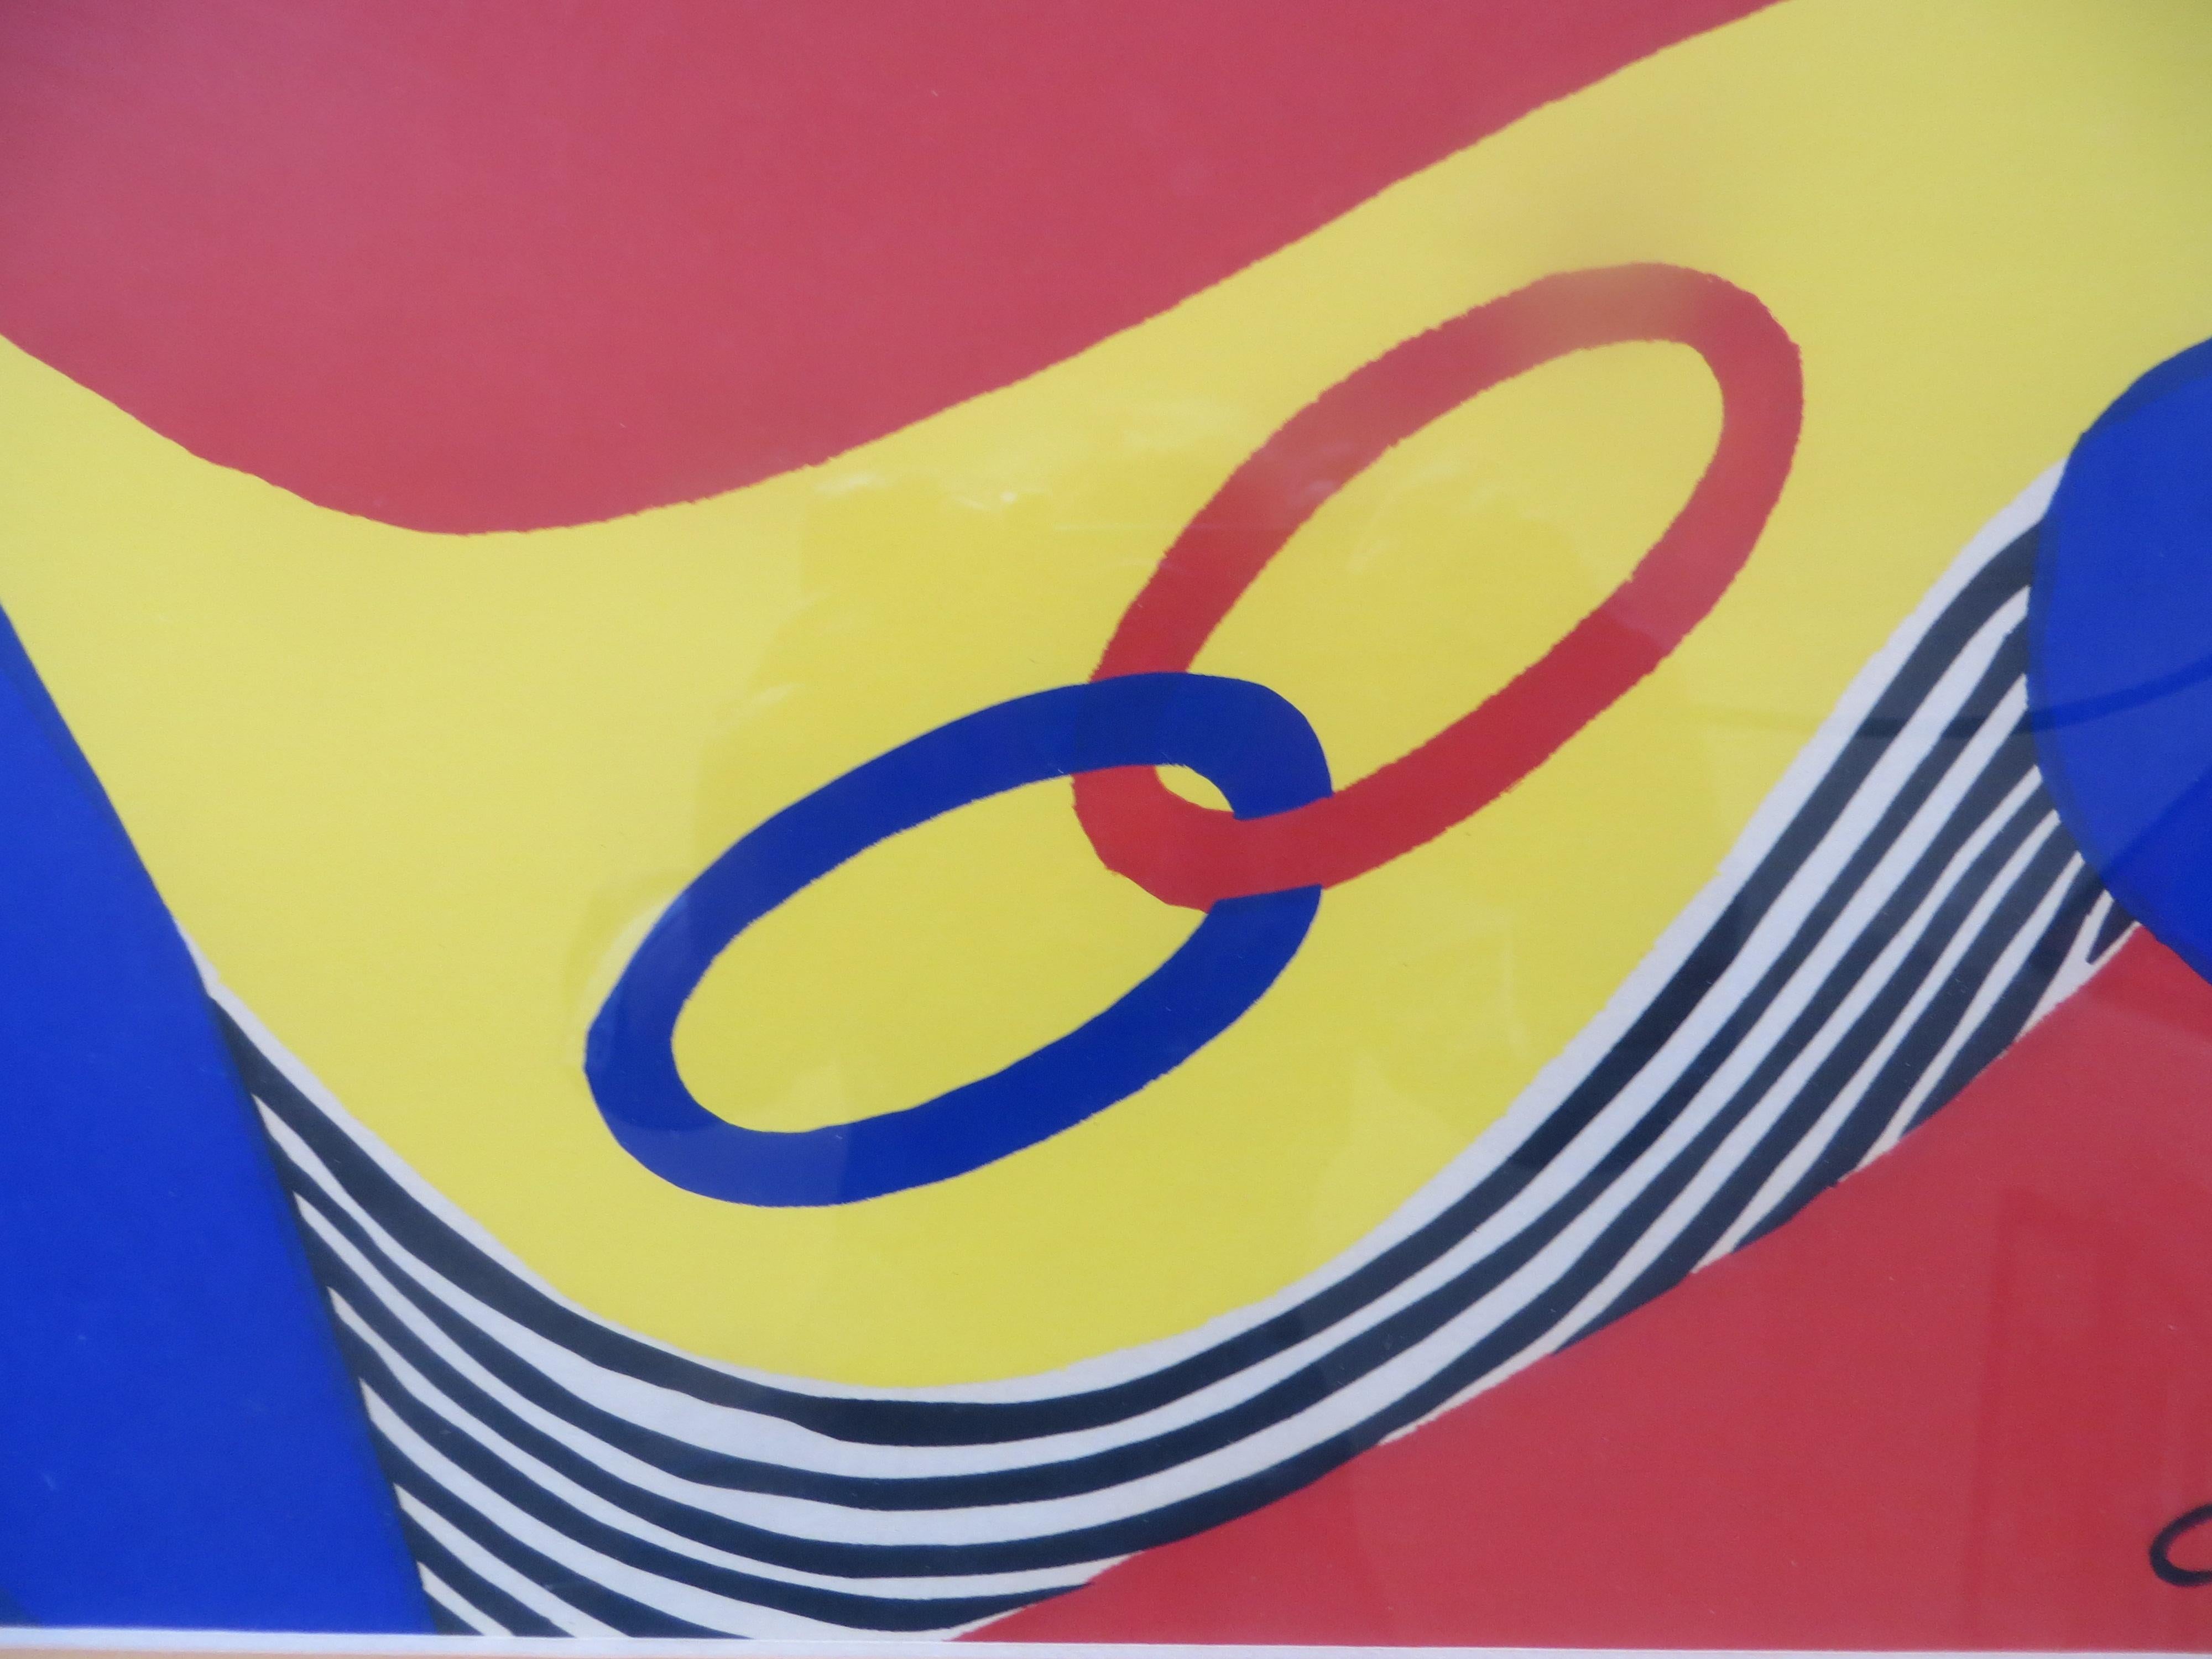 
Lithographie colorée d'Alexander Calder sur papier Arches, édition limitée à 250/375 exemplaires. 
Signé et daté dans la plaque en bas à droite.Alexander Calder était un sculpteur américain connu à la fois pour ses mobiles innovants qui font appel